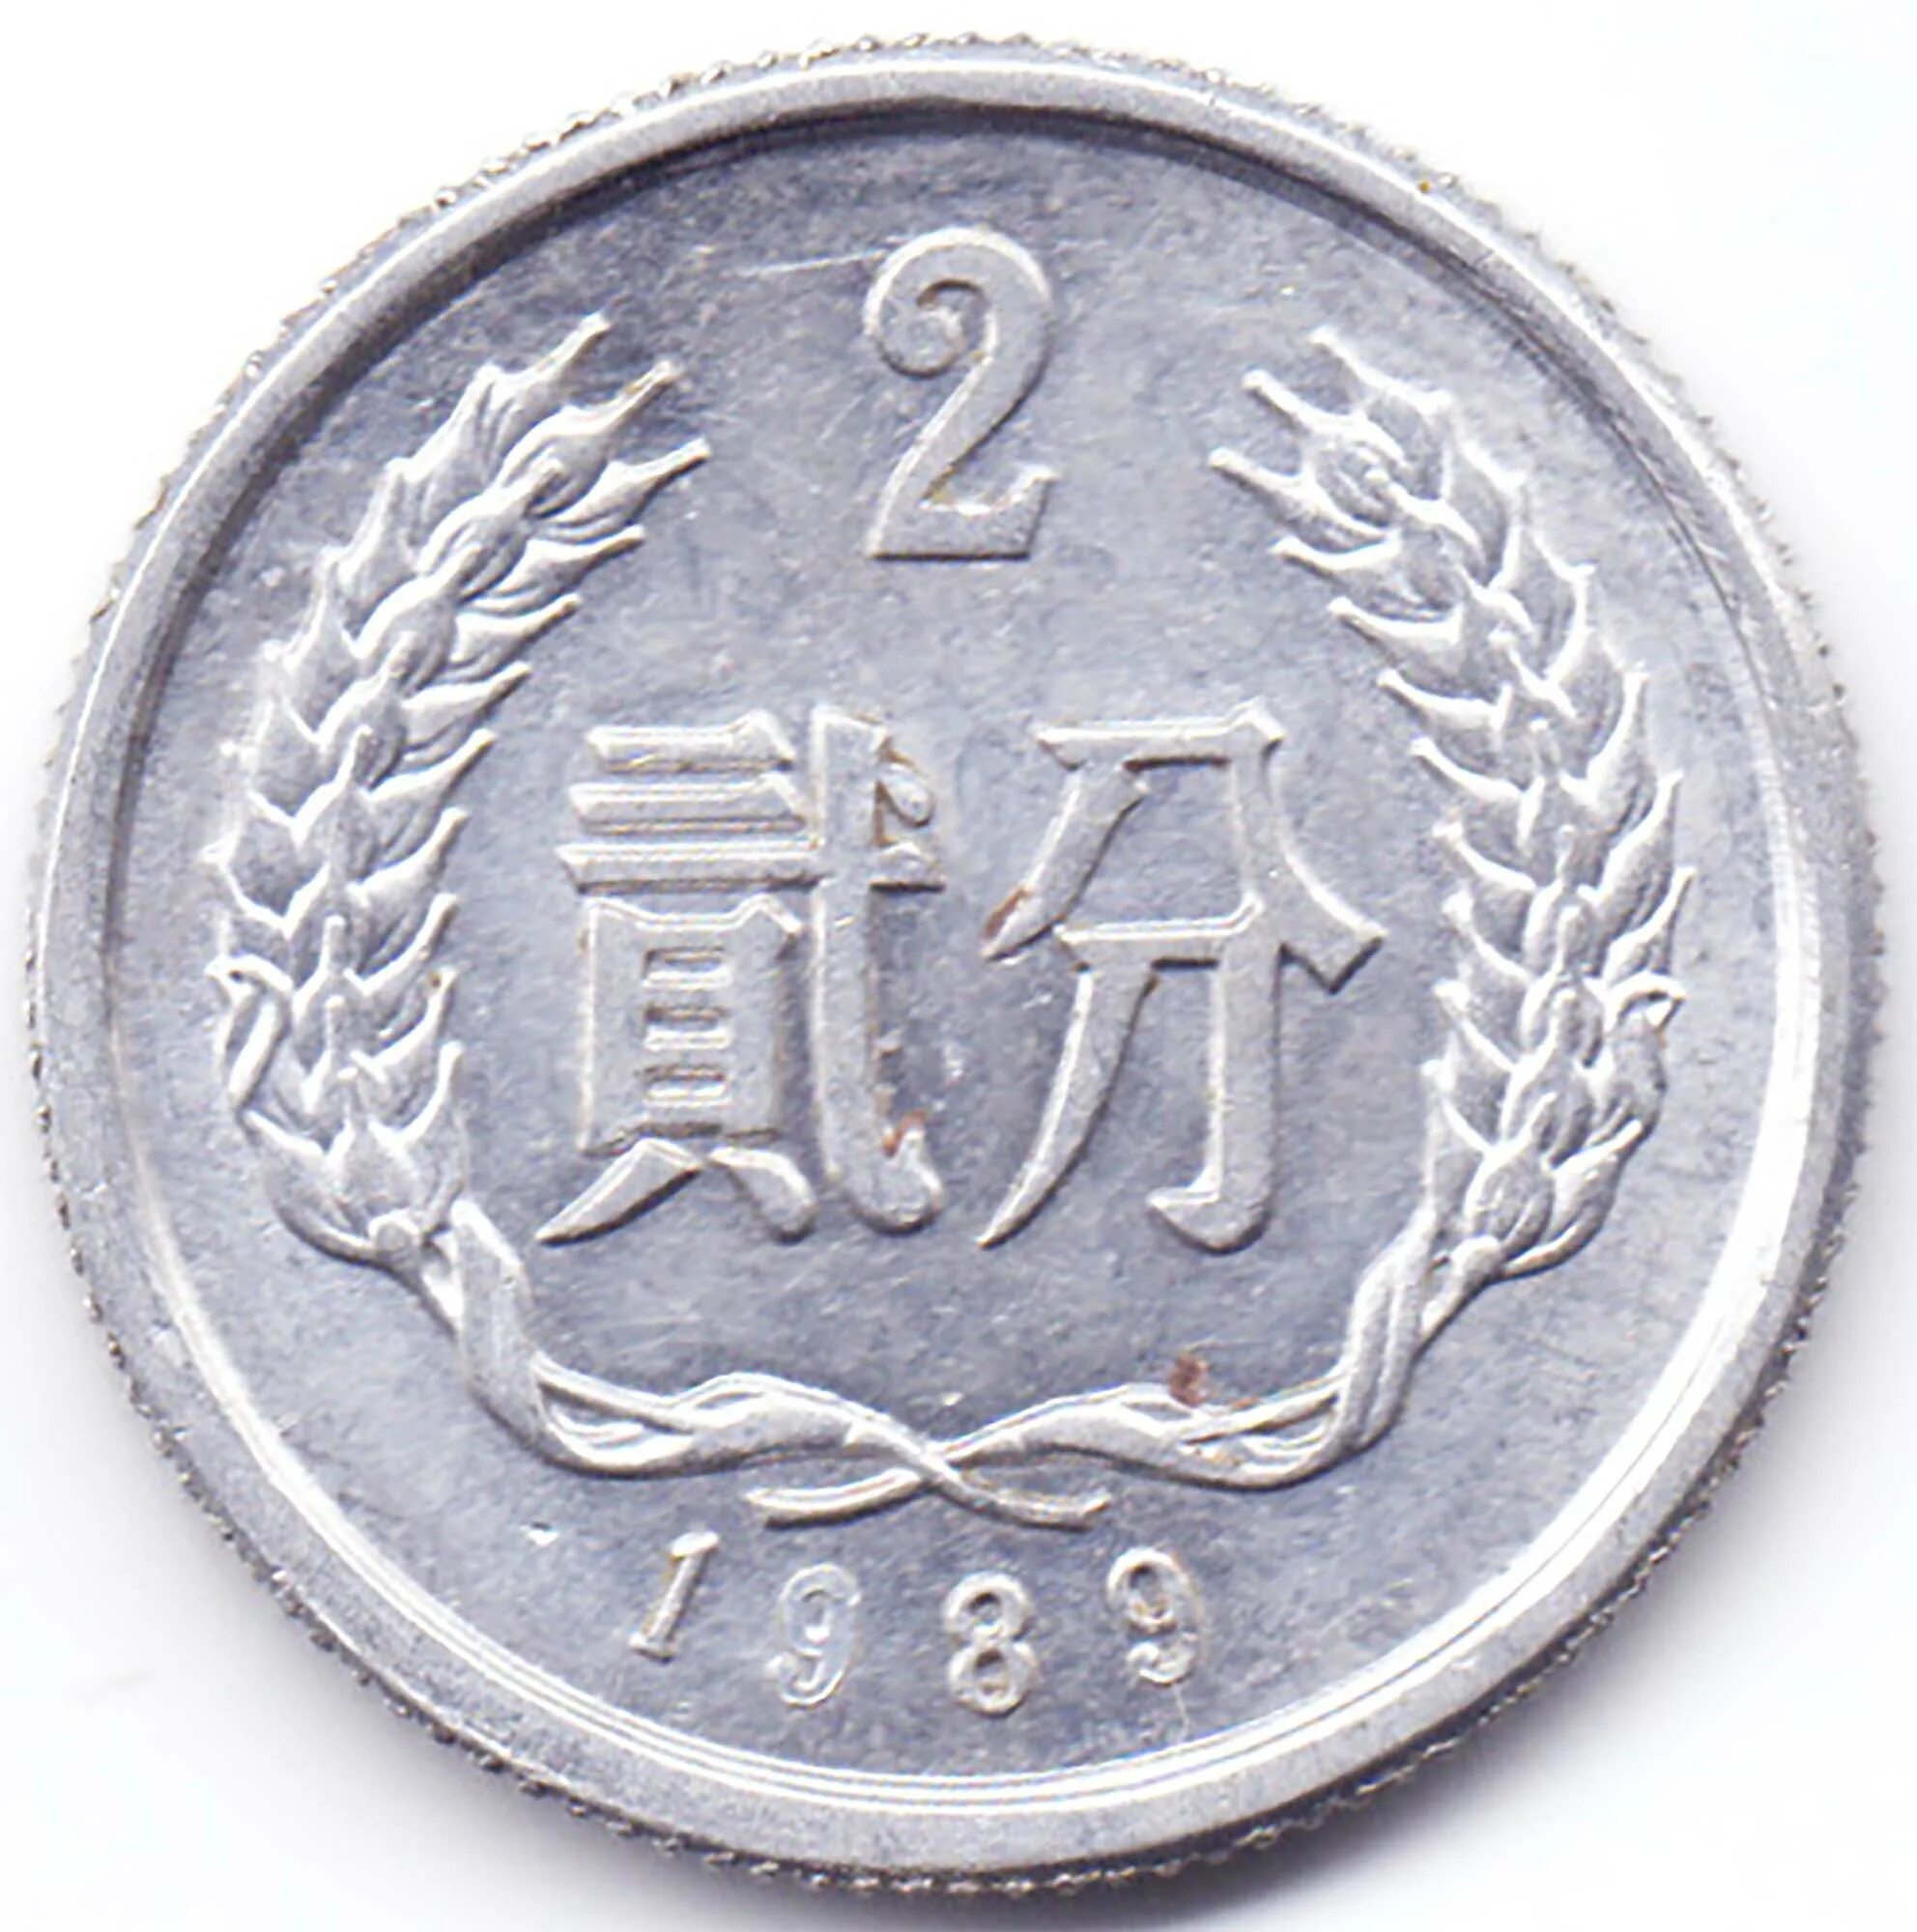 1 фень. 2 Фень Китай. Монета Китай 2 фэнь 1956 года. Монета 2 фэней. Монета Фень Китай.